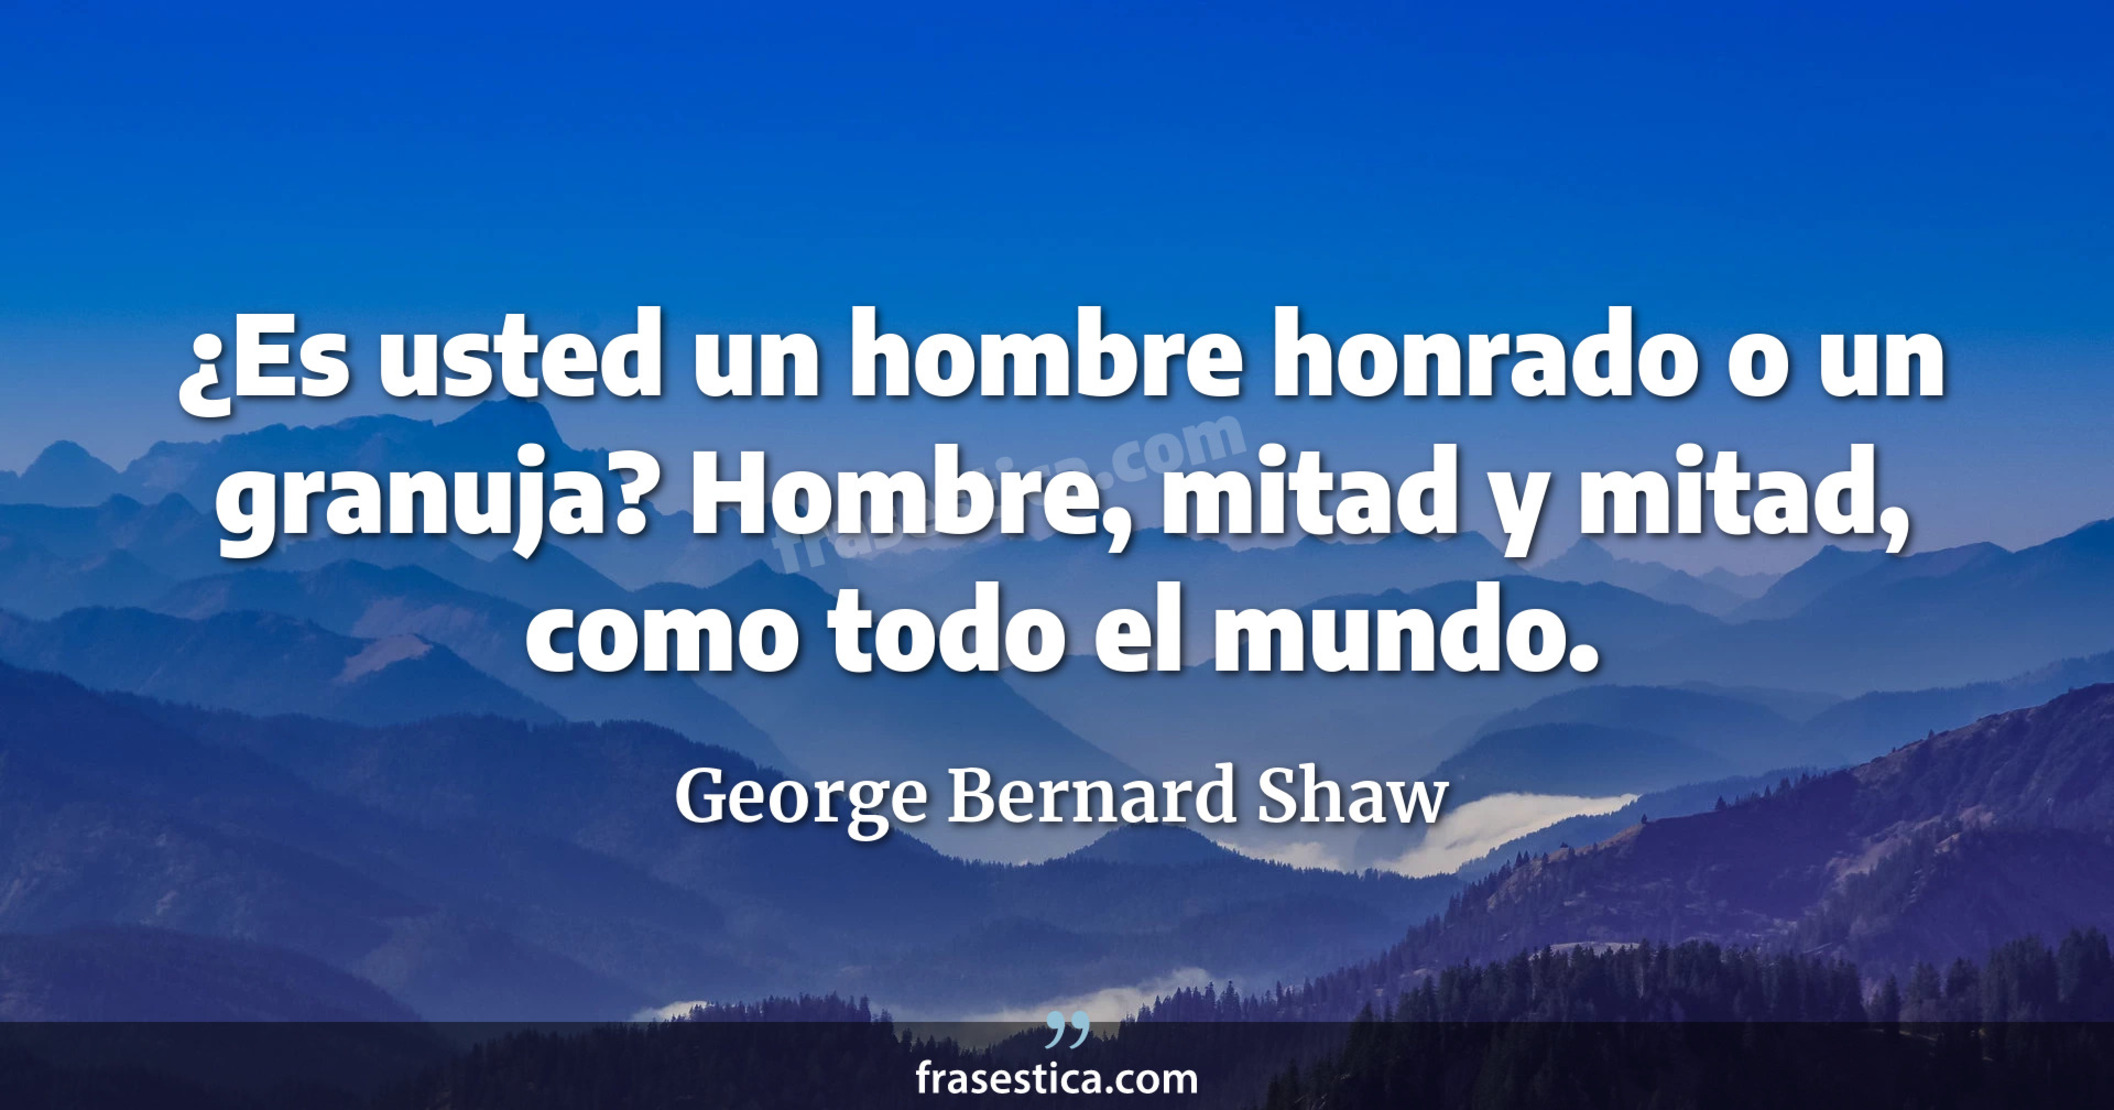 ¿Es usted un hombre honrado o un granuja? Hombre, mitad y mitad, como todo el mundo. - George Bernard Shaw